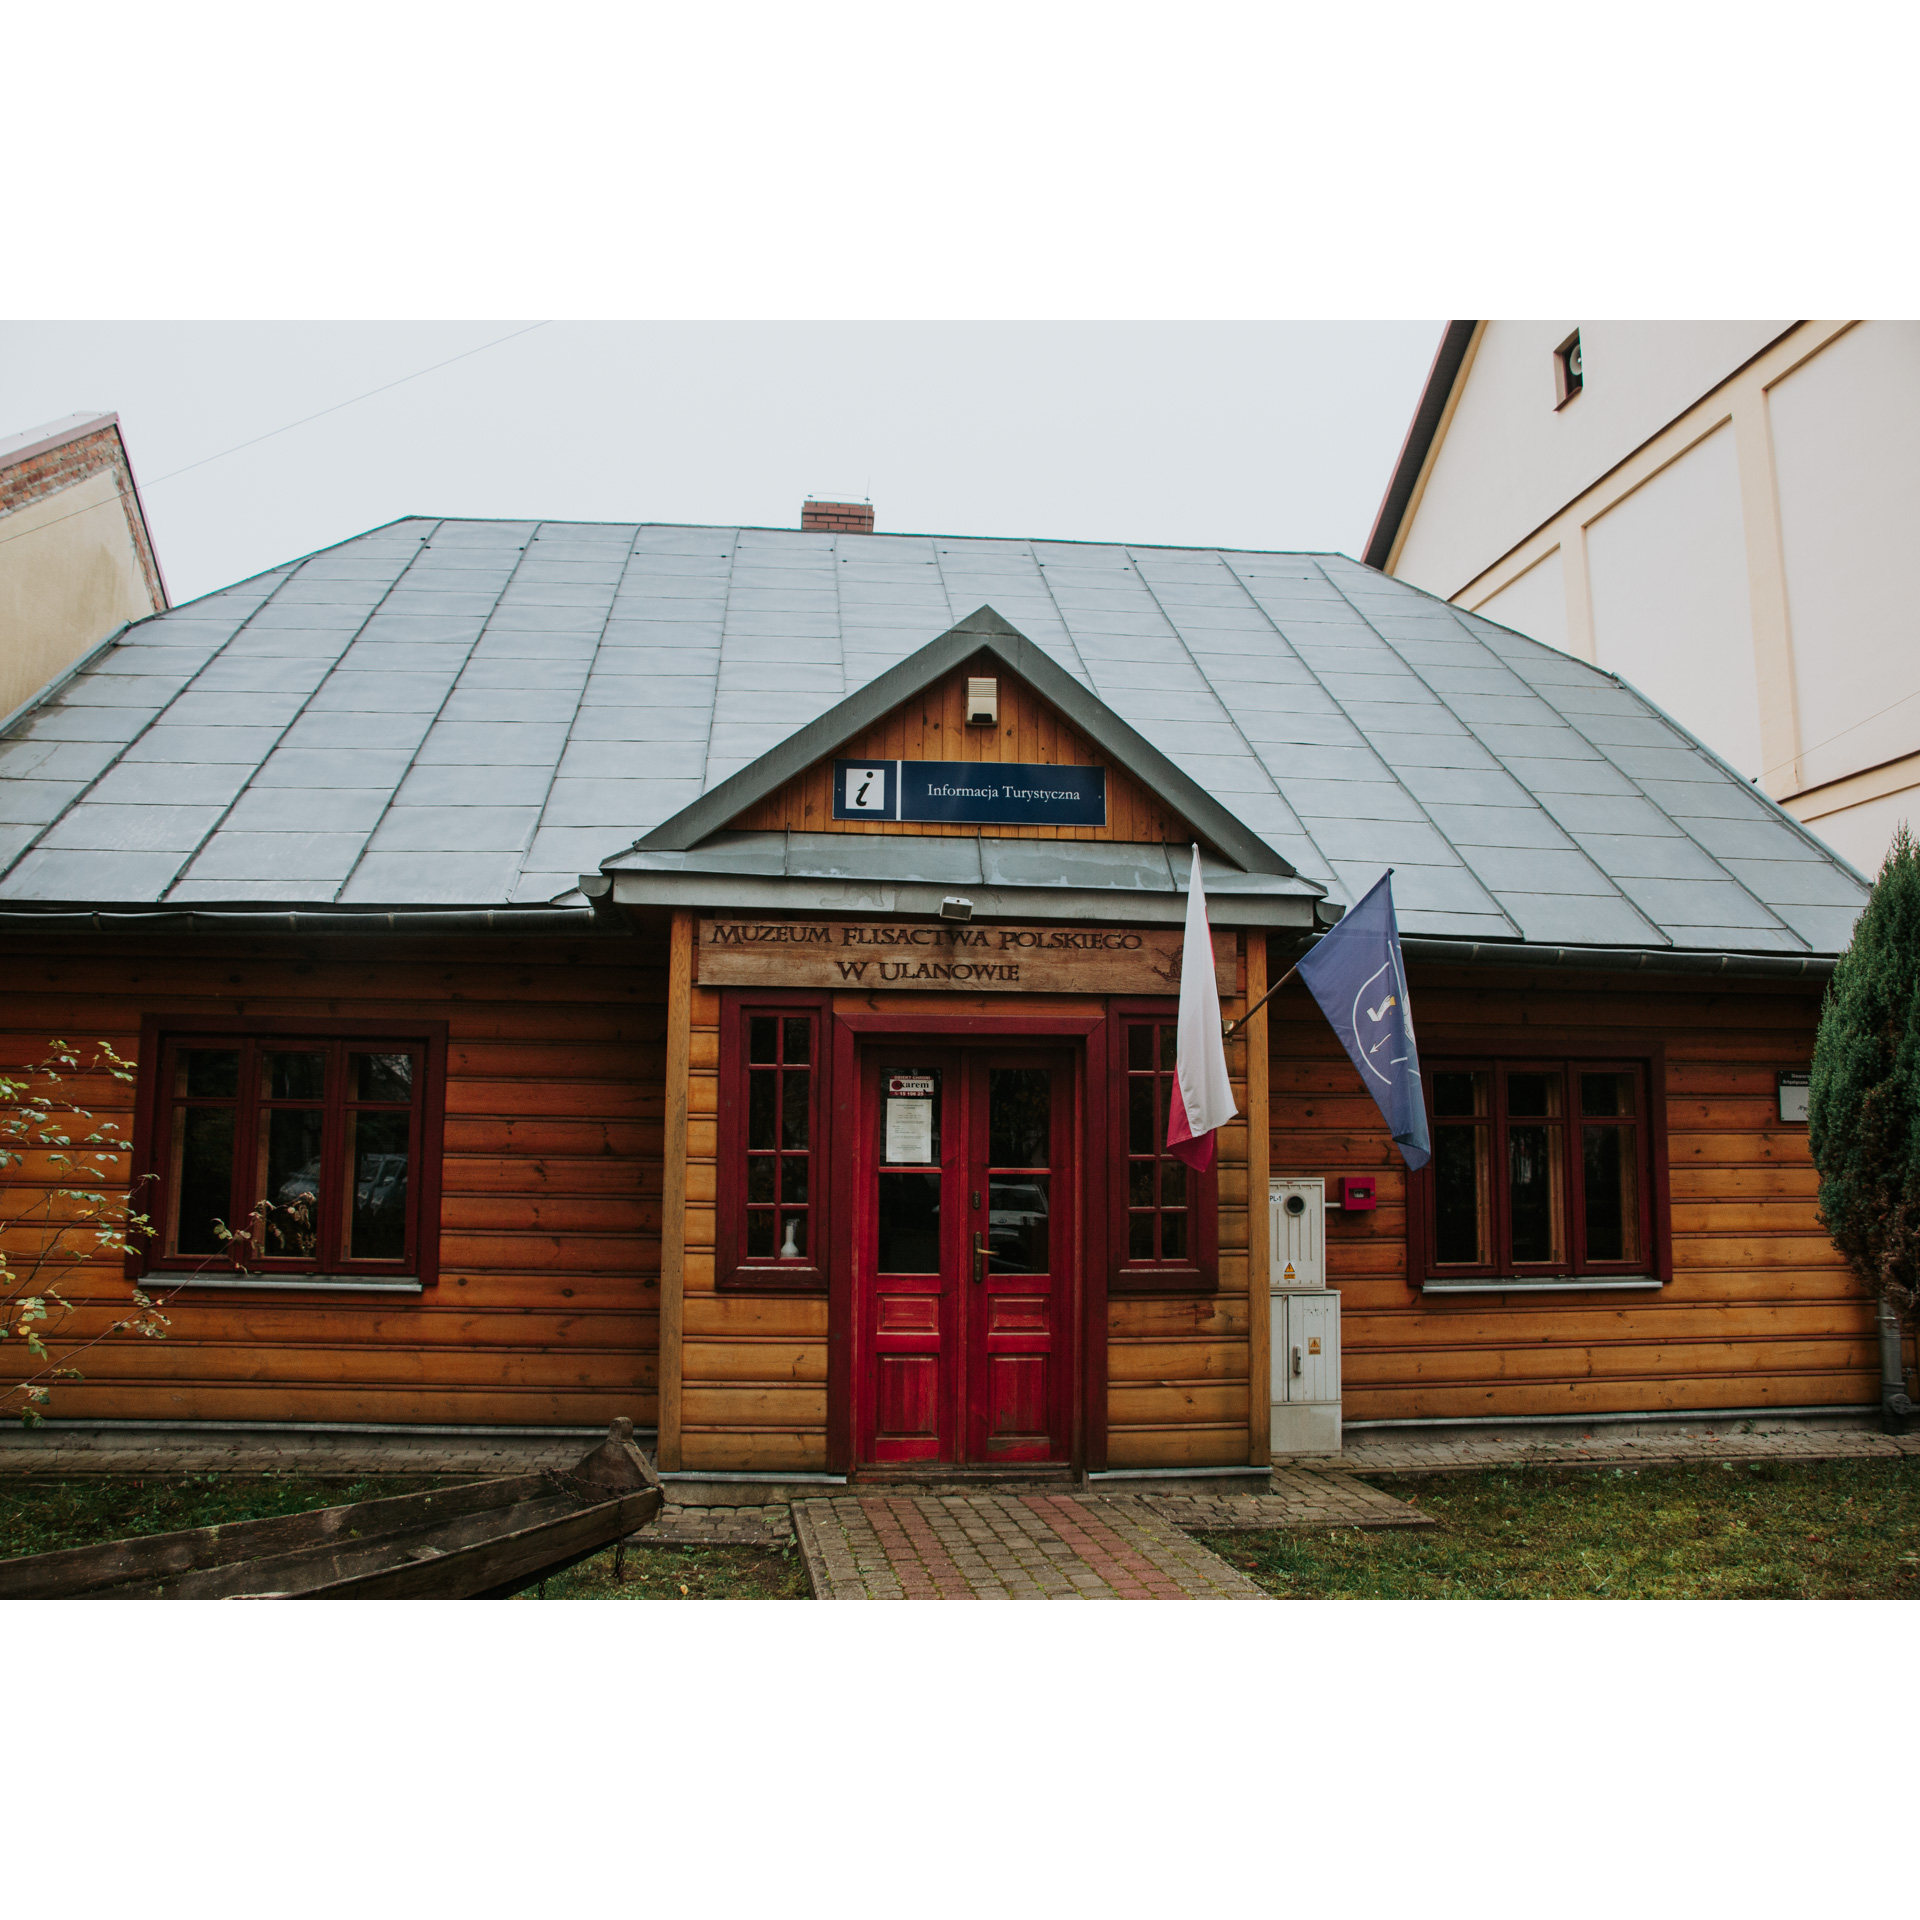 Wejście do drewnianego budynku muzeum z czerwonymi, oszklonymi drzwiami i szarym dachem